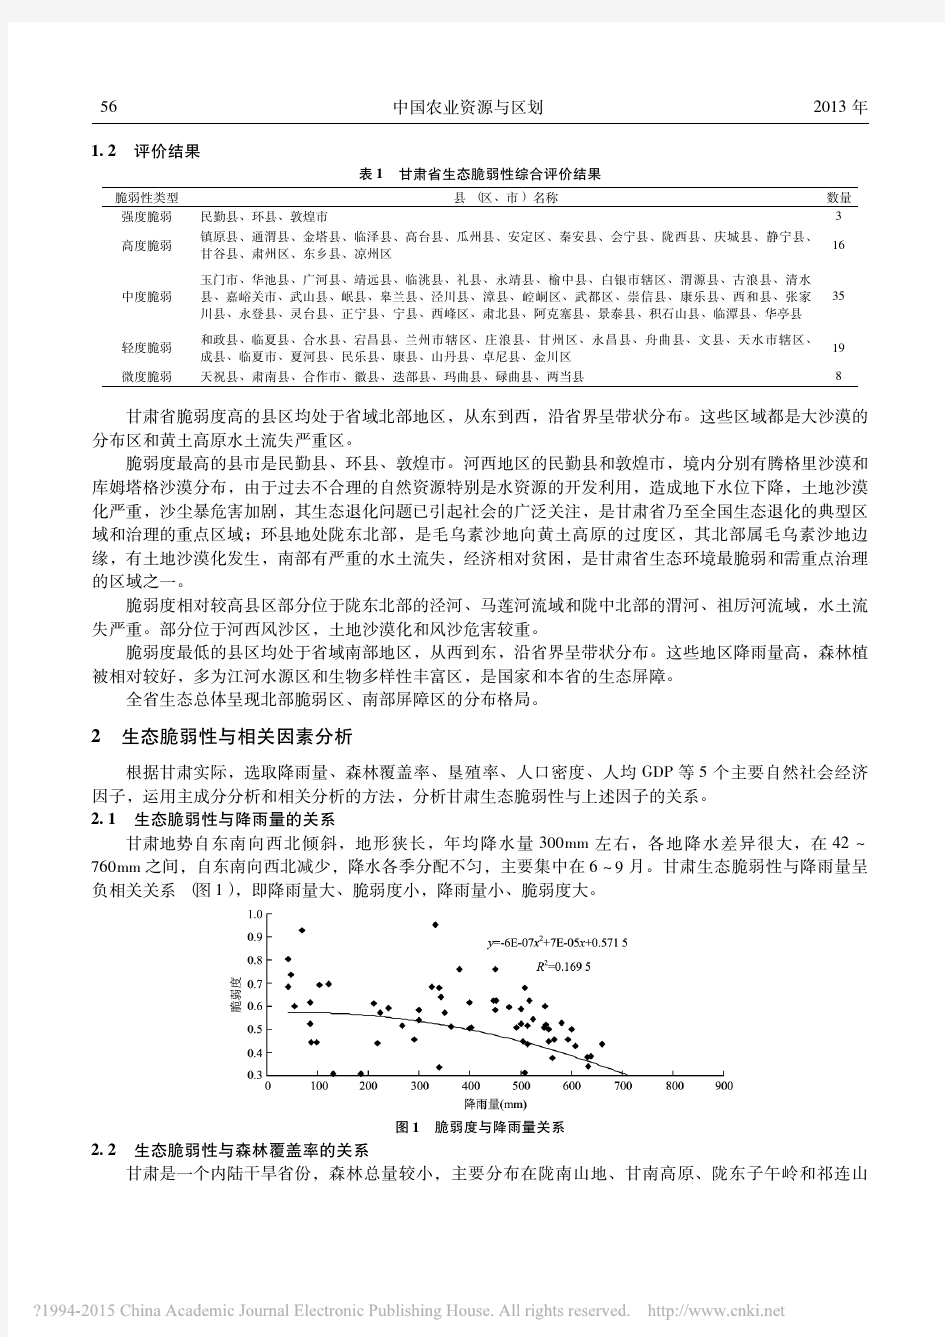 甘肃省生态环境脆弱性及其主要影响因素分析_张龙生